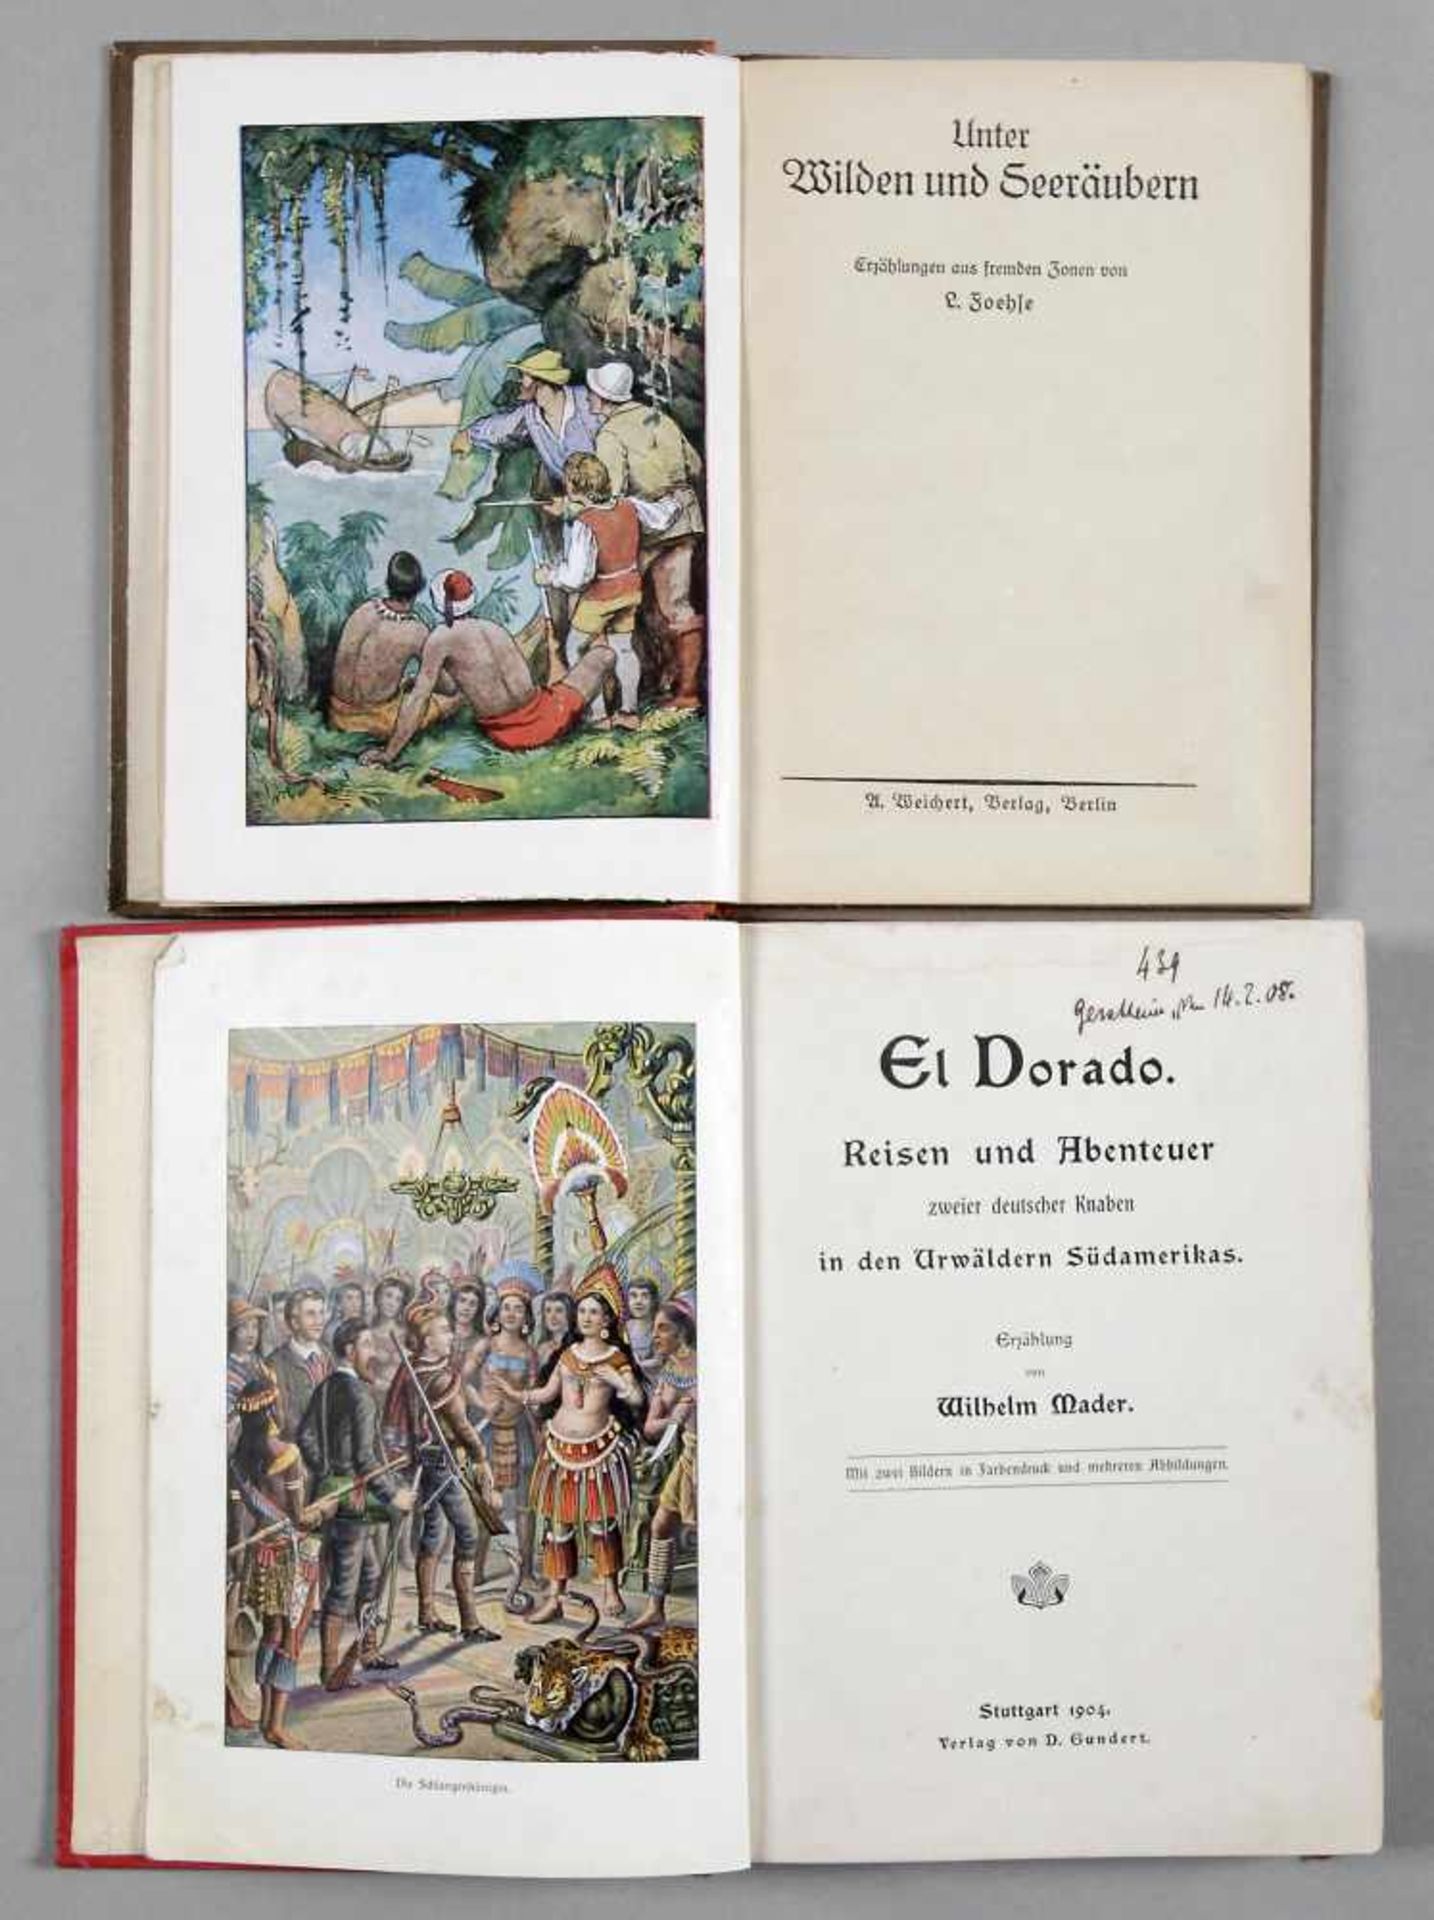 2 Bände Abenteuer-Literatur- Ludwig Foehse: "Unter Wilden und Seeräubern", A. Weichert Verlag,